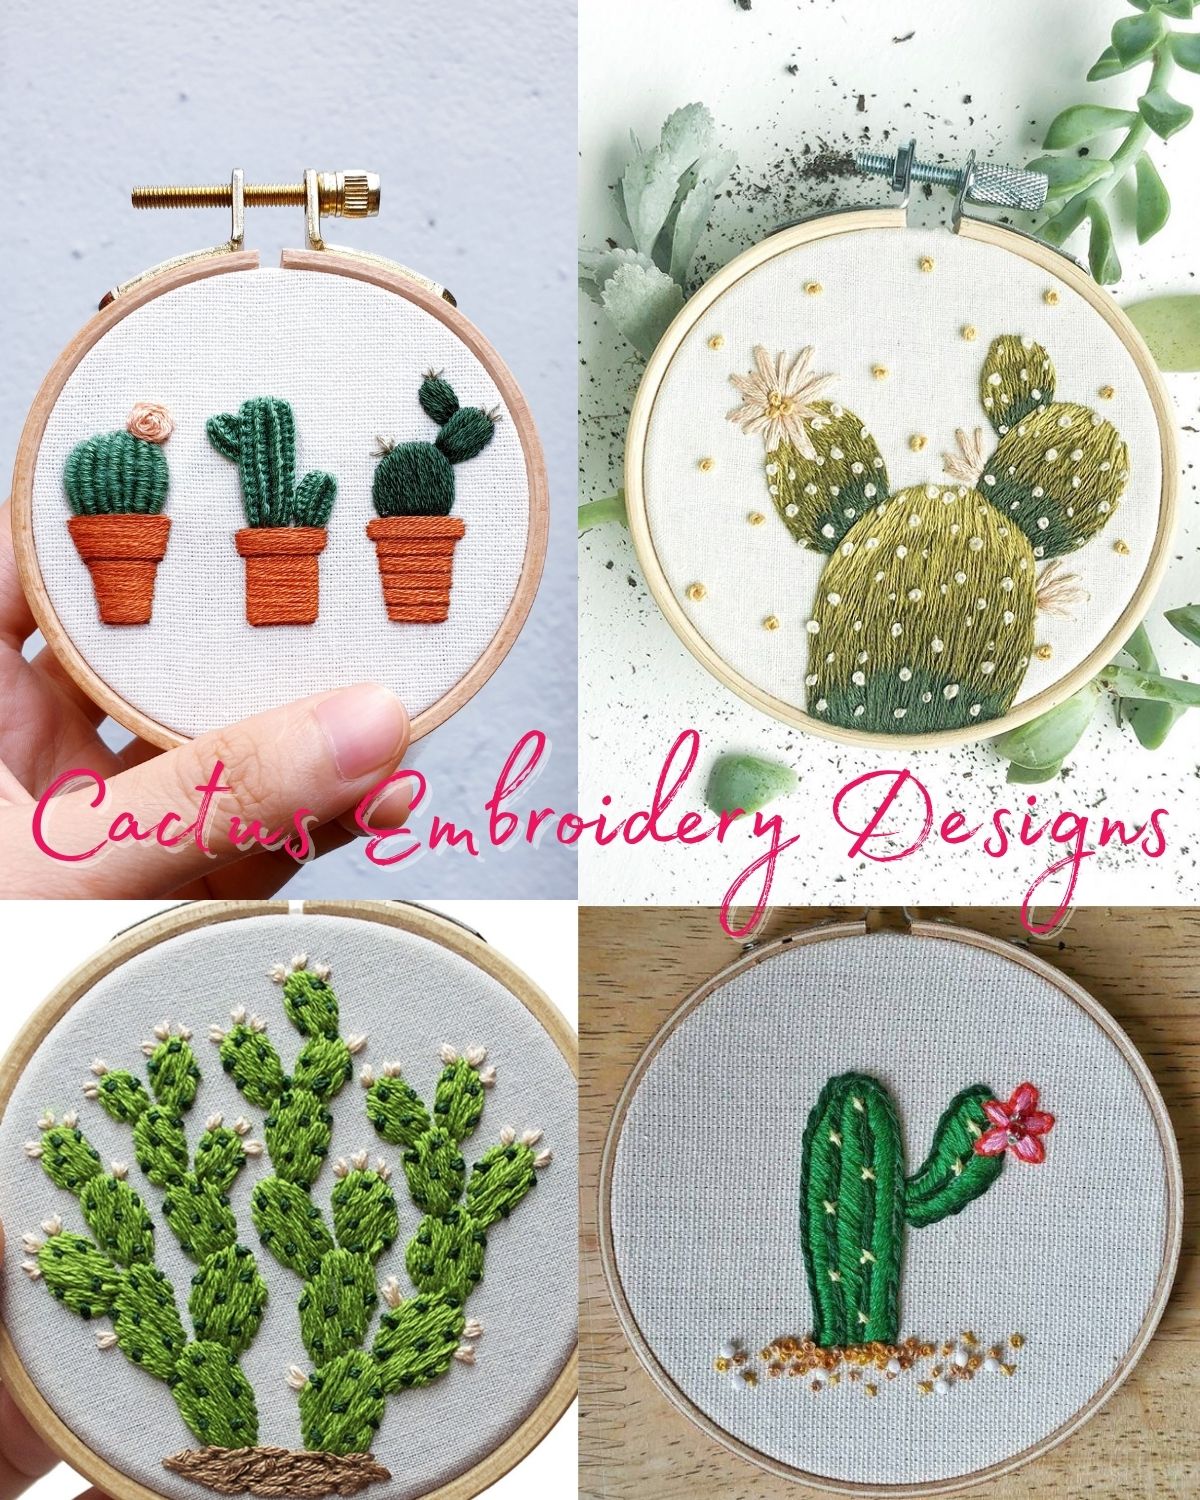 Four designs with cactus 